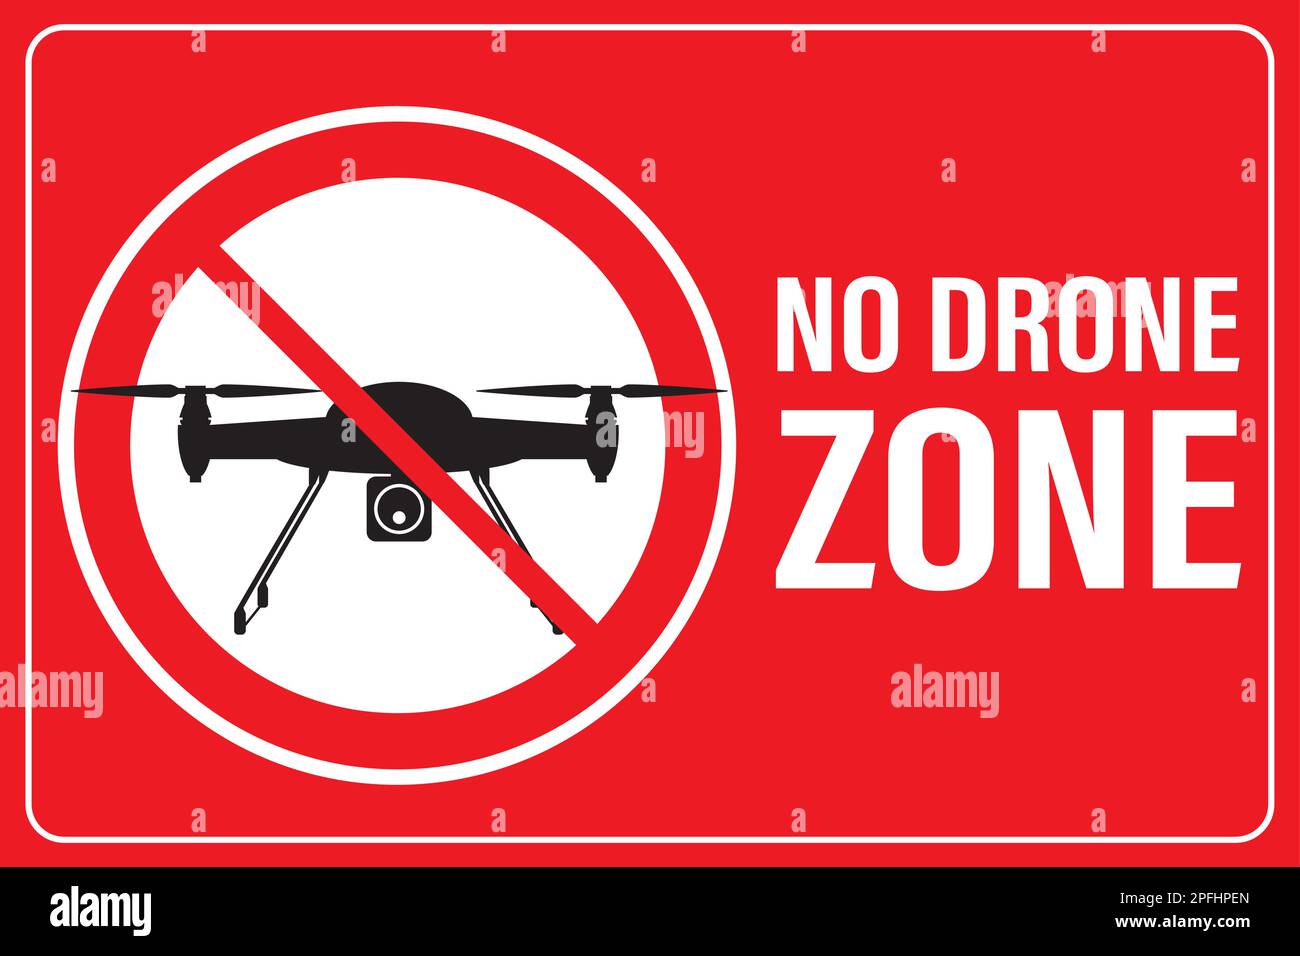 Hubschrauberstart verboten - keine Luftdrohne erlaubt Schild, Quadrocopterflug verboten. Keine Drohnenzone. Schwarze Silhouette der Drohne im roten Kreis. Vorlage stic Stock Vektor